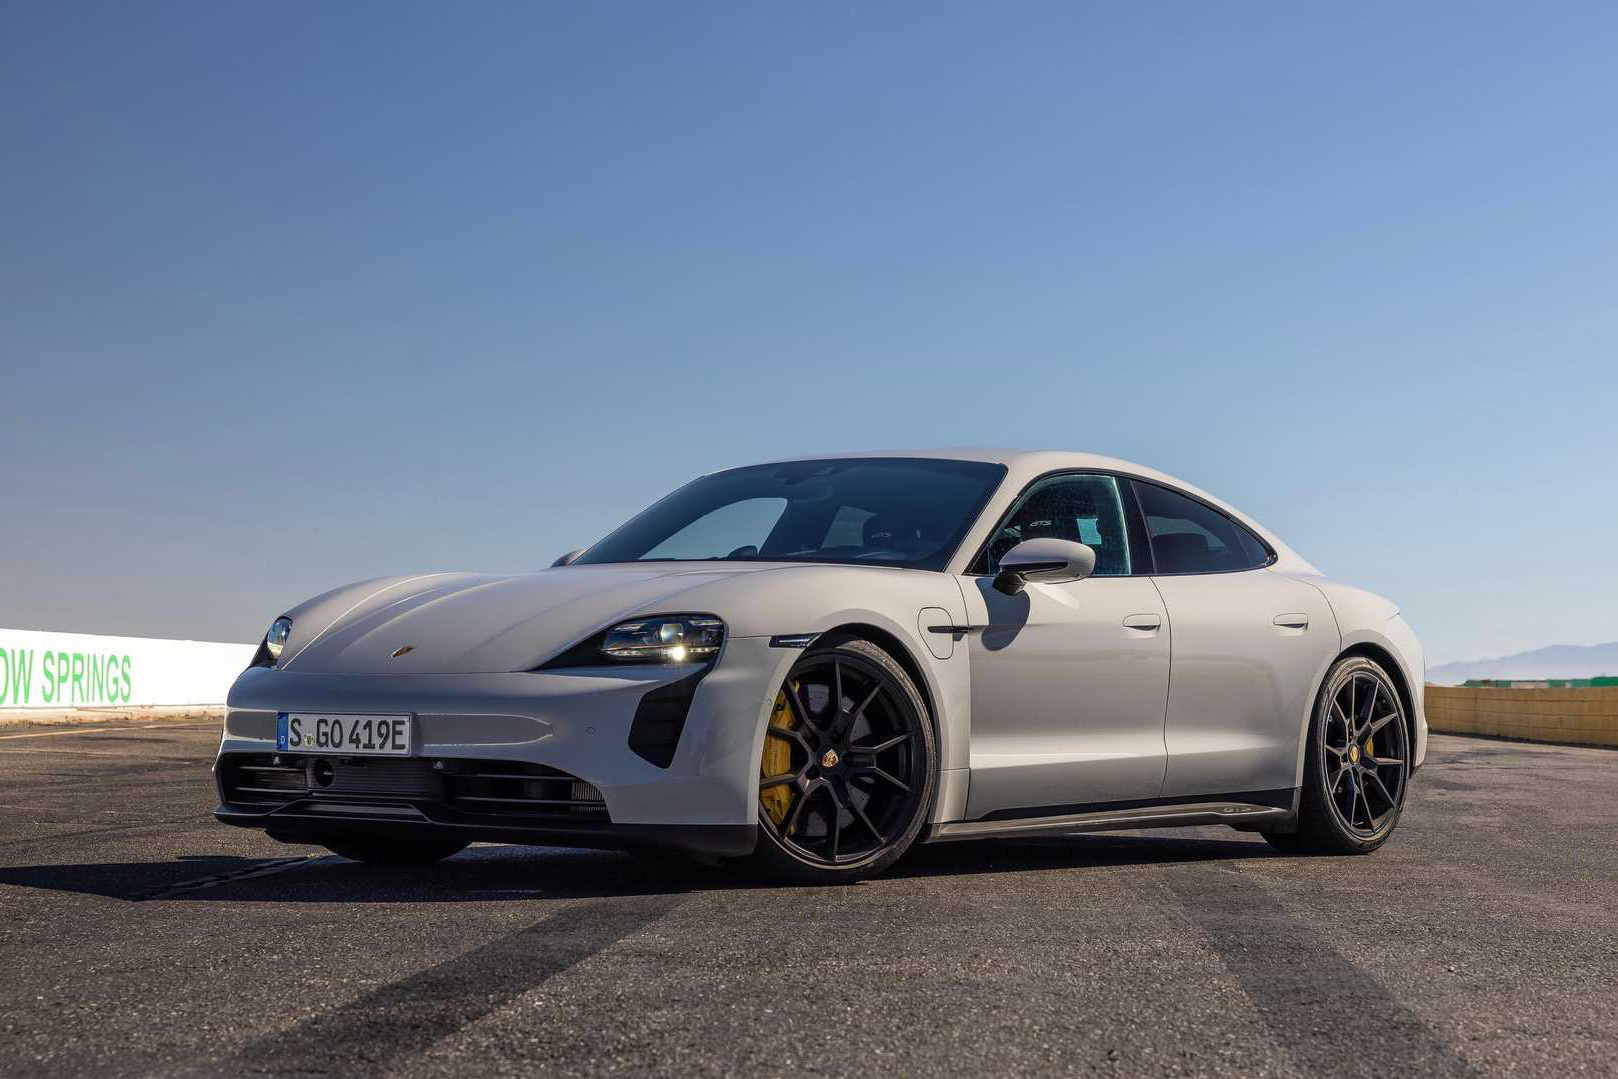 Bất chấp ảnh hưởng bởi dịch, Porsche vẫn lập kỷ lục doanh số nhưng đây mới là cái tên chiếm vị thế bán chạy của 911